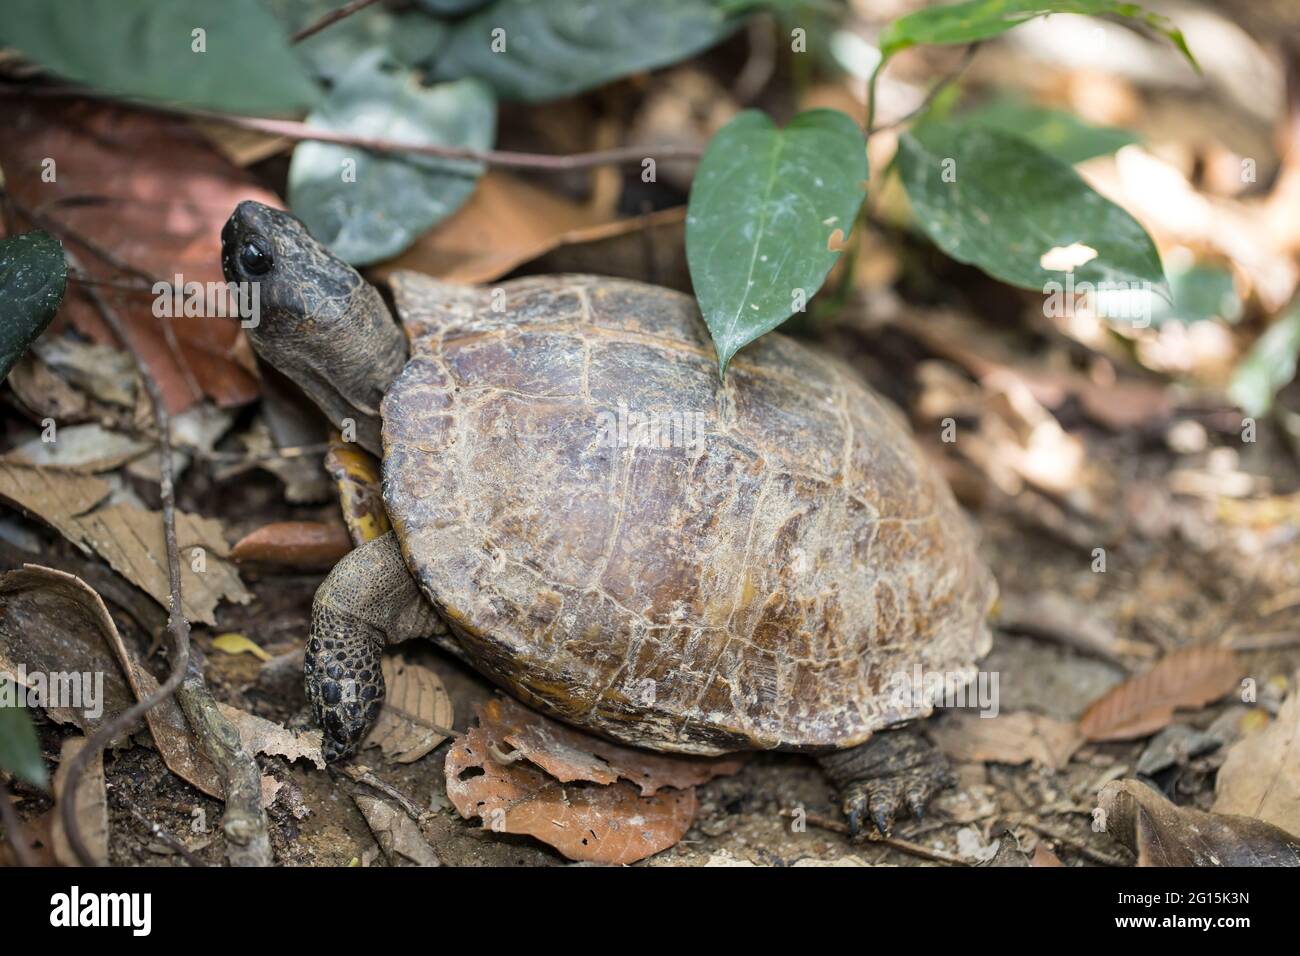 Una tortuga de la selva vista a lo largo de un sendero en una selva tropical Foto de stock